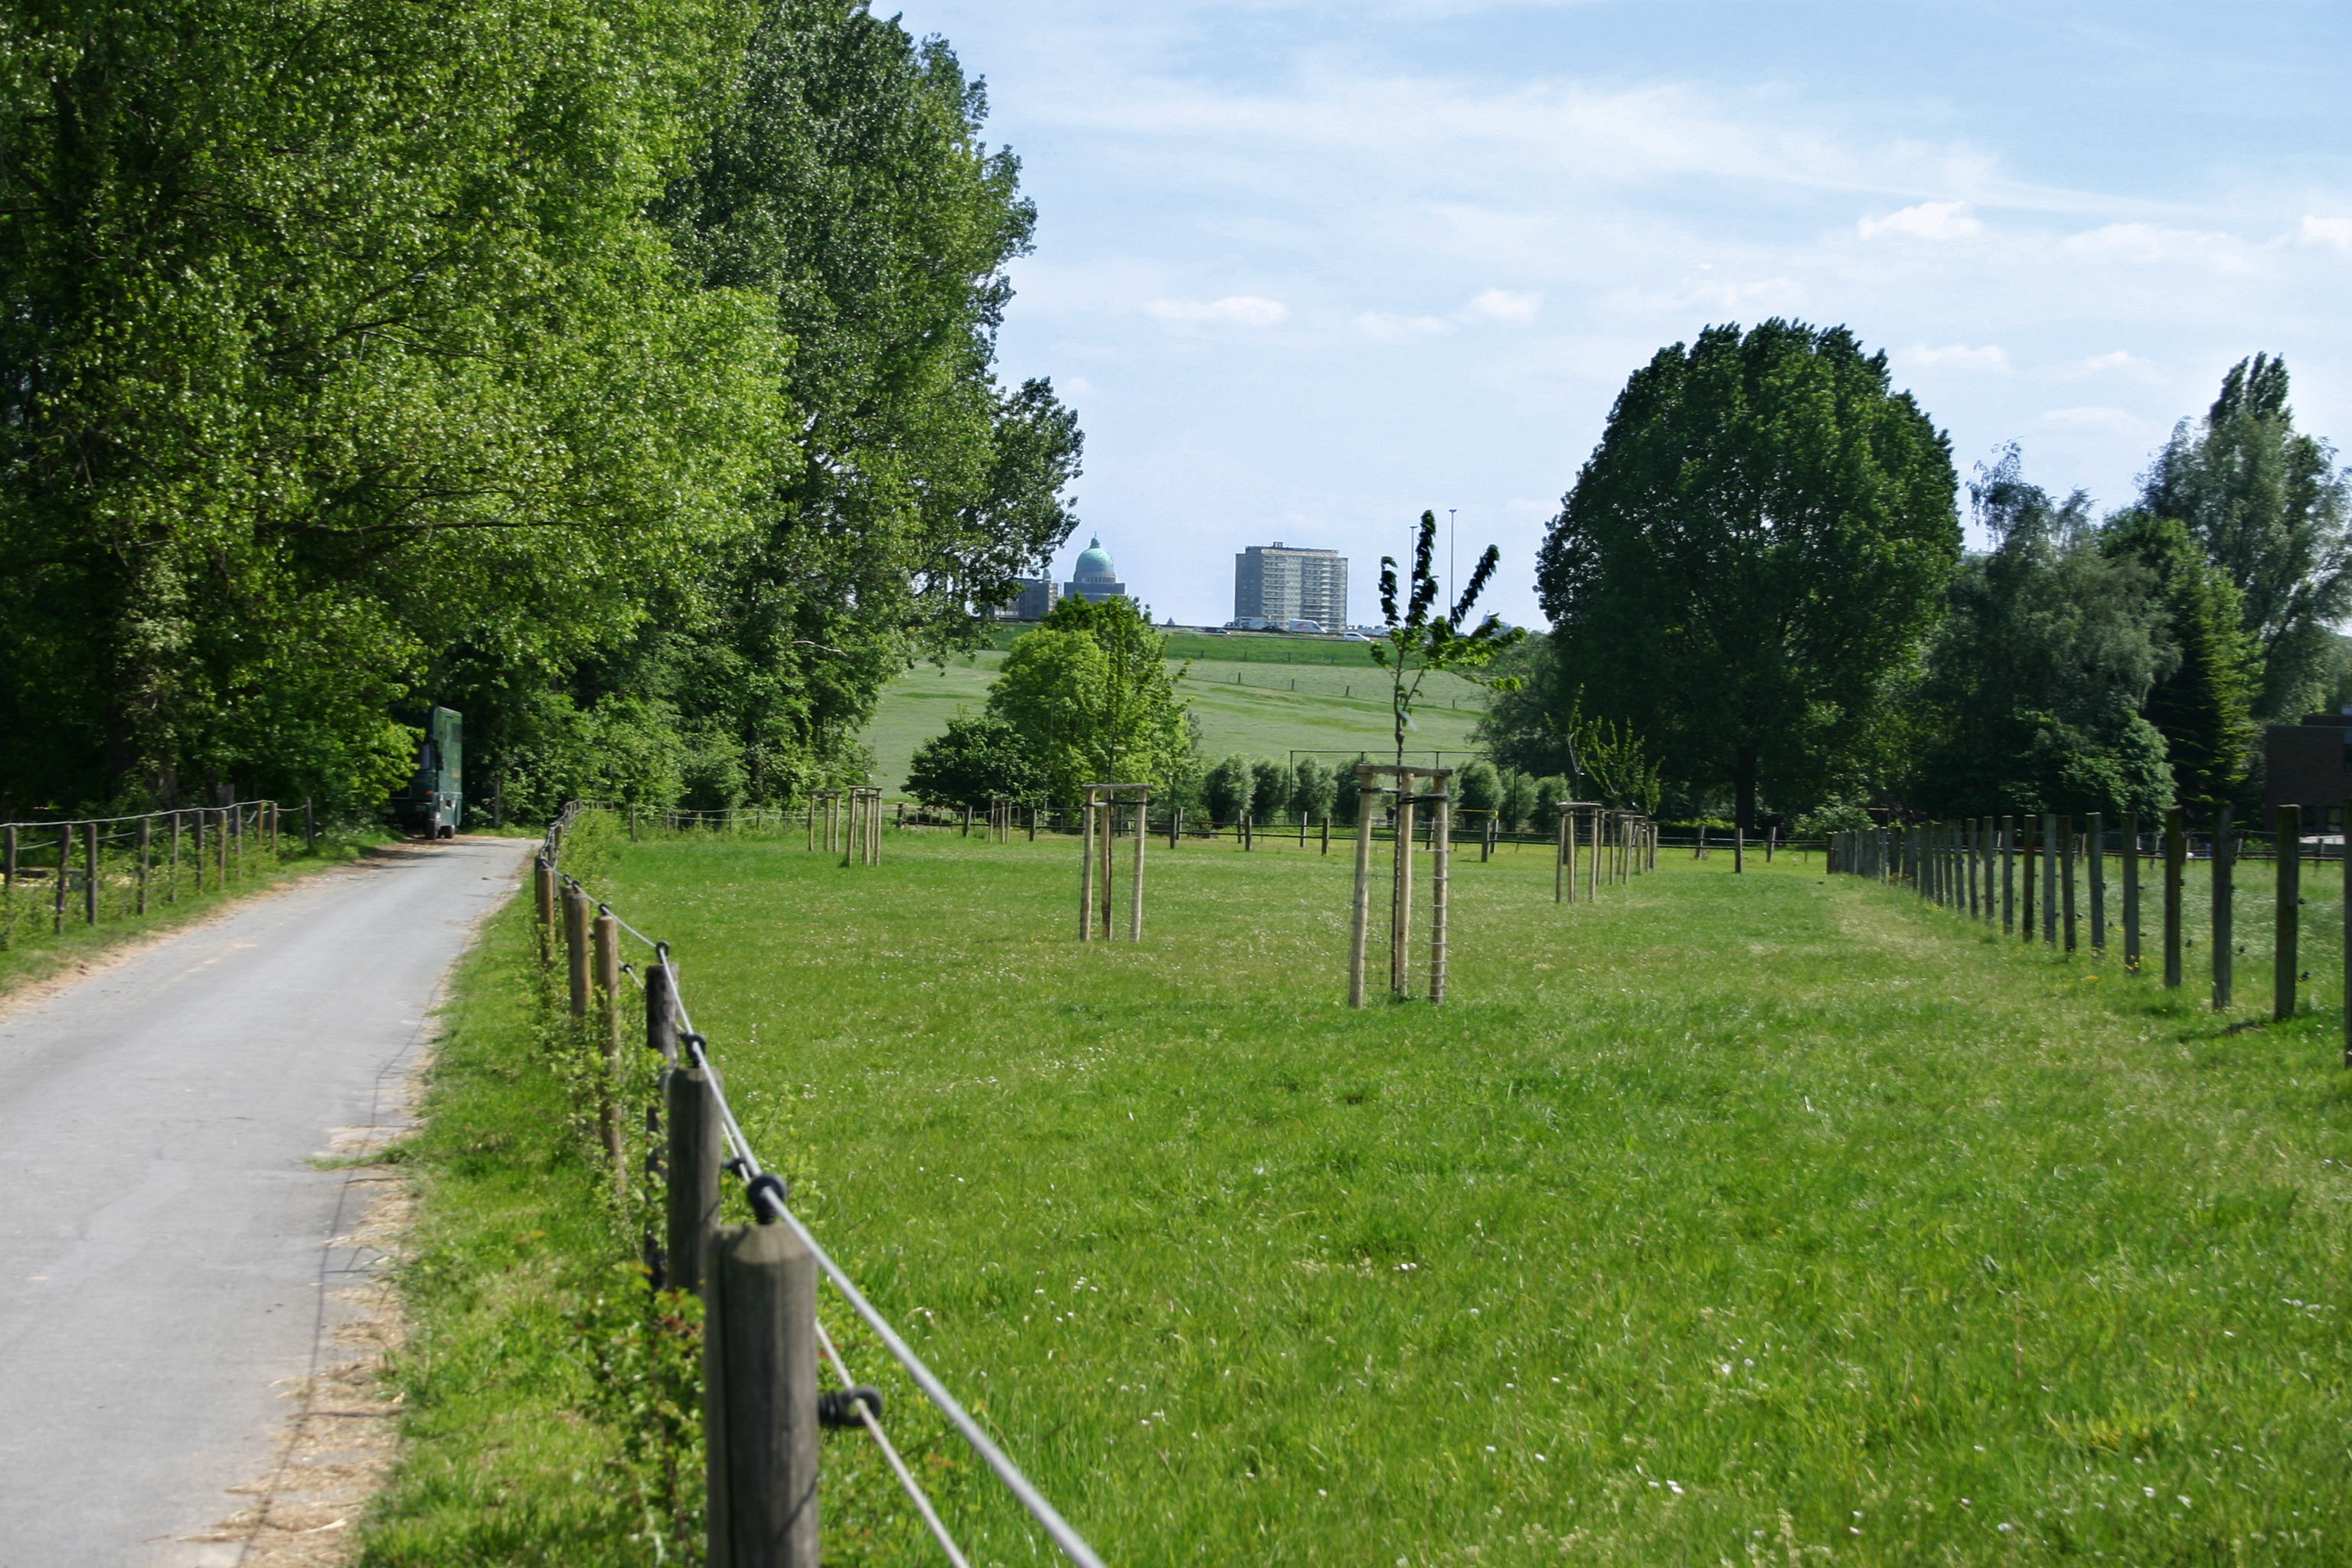 Foto toont locatie in de Vlaamse Rand met basiliek van Koekelberg in de achtergrond